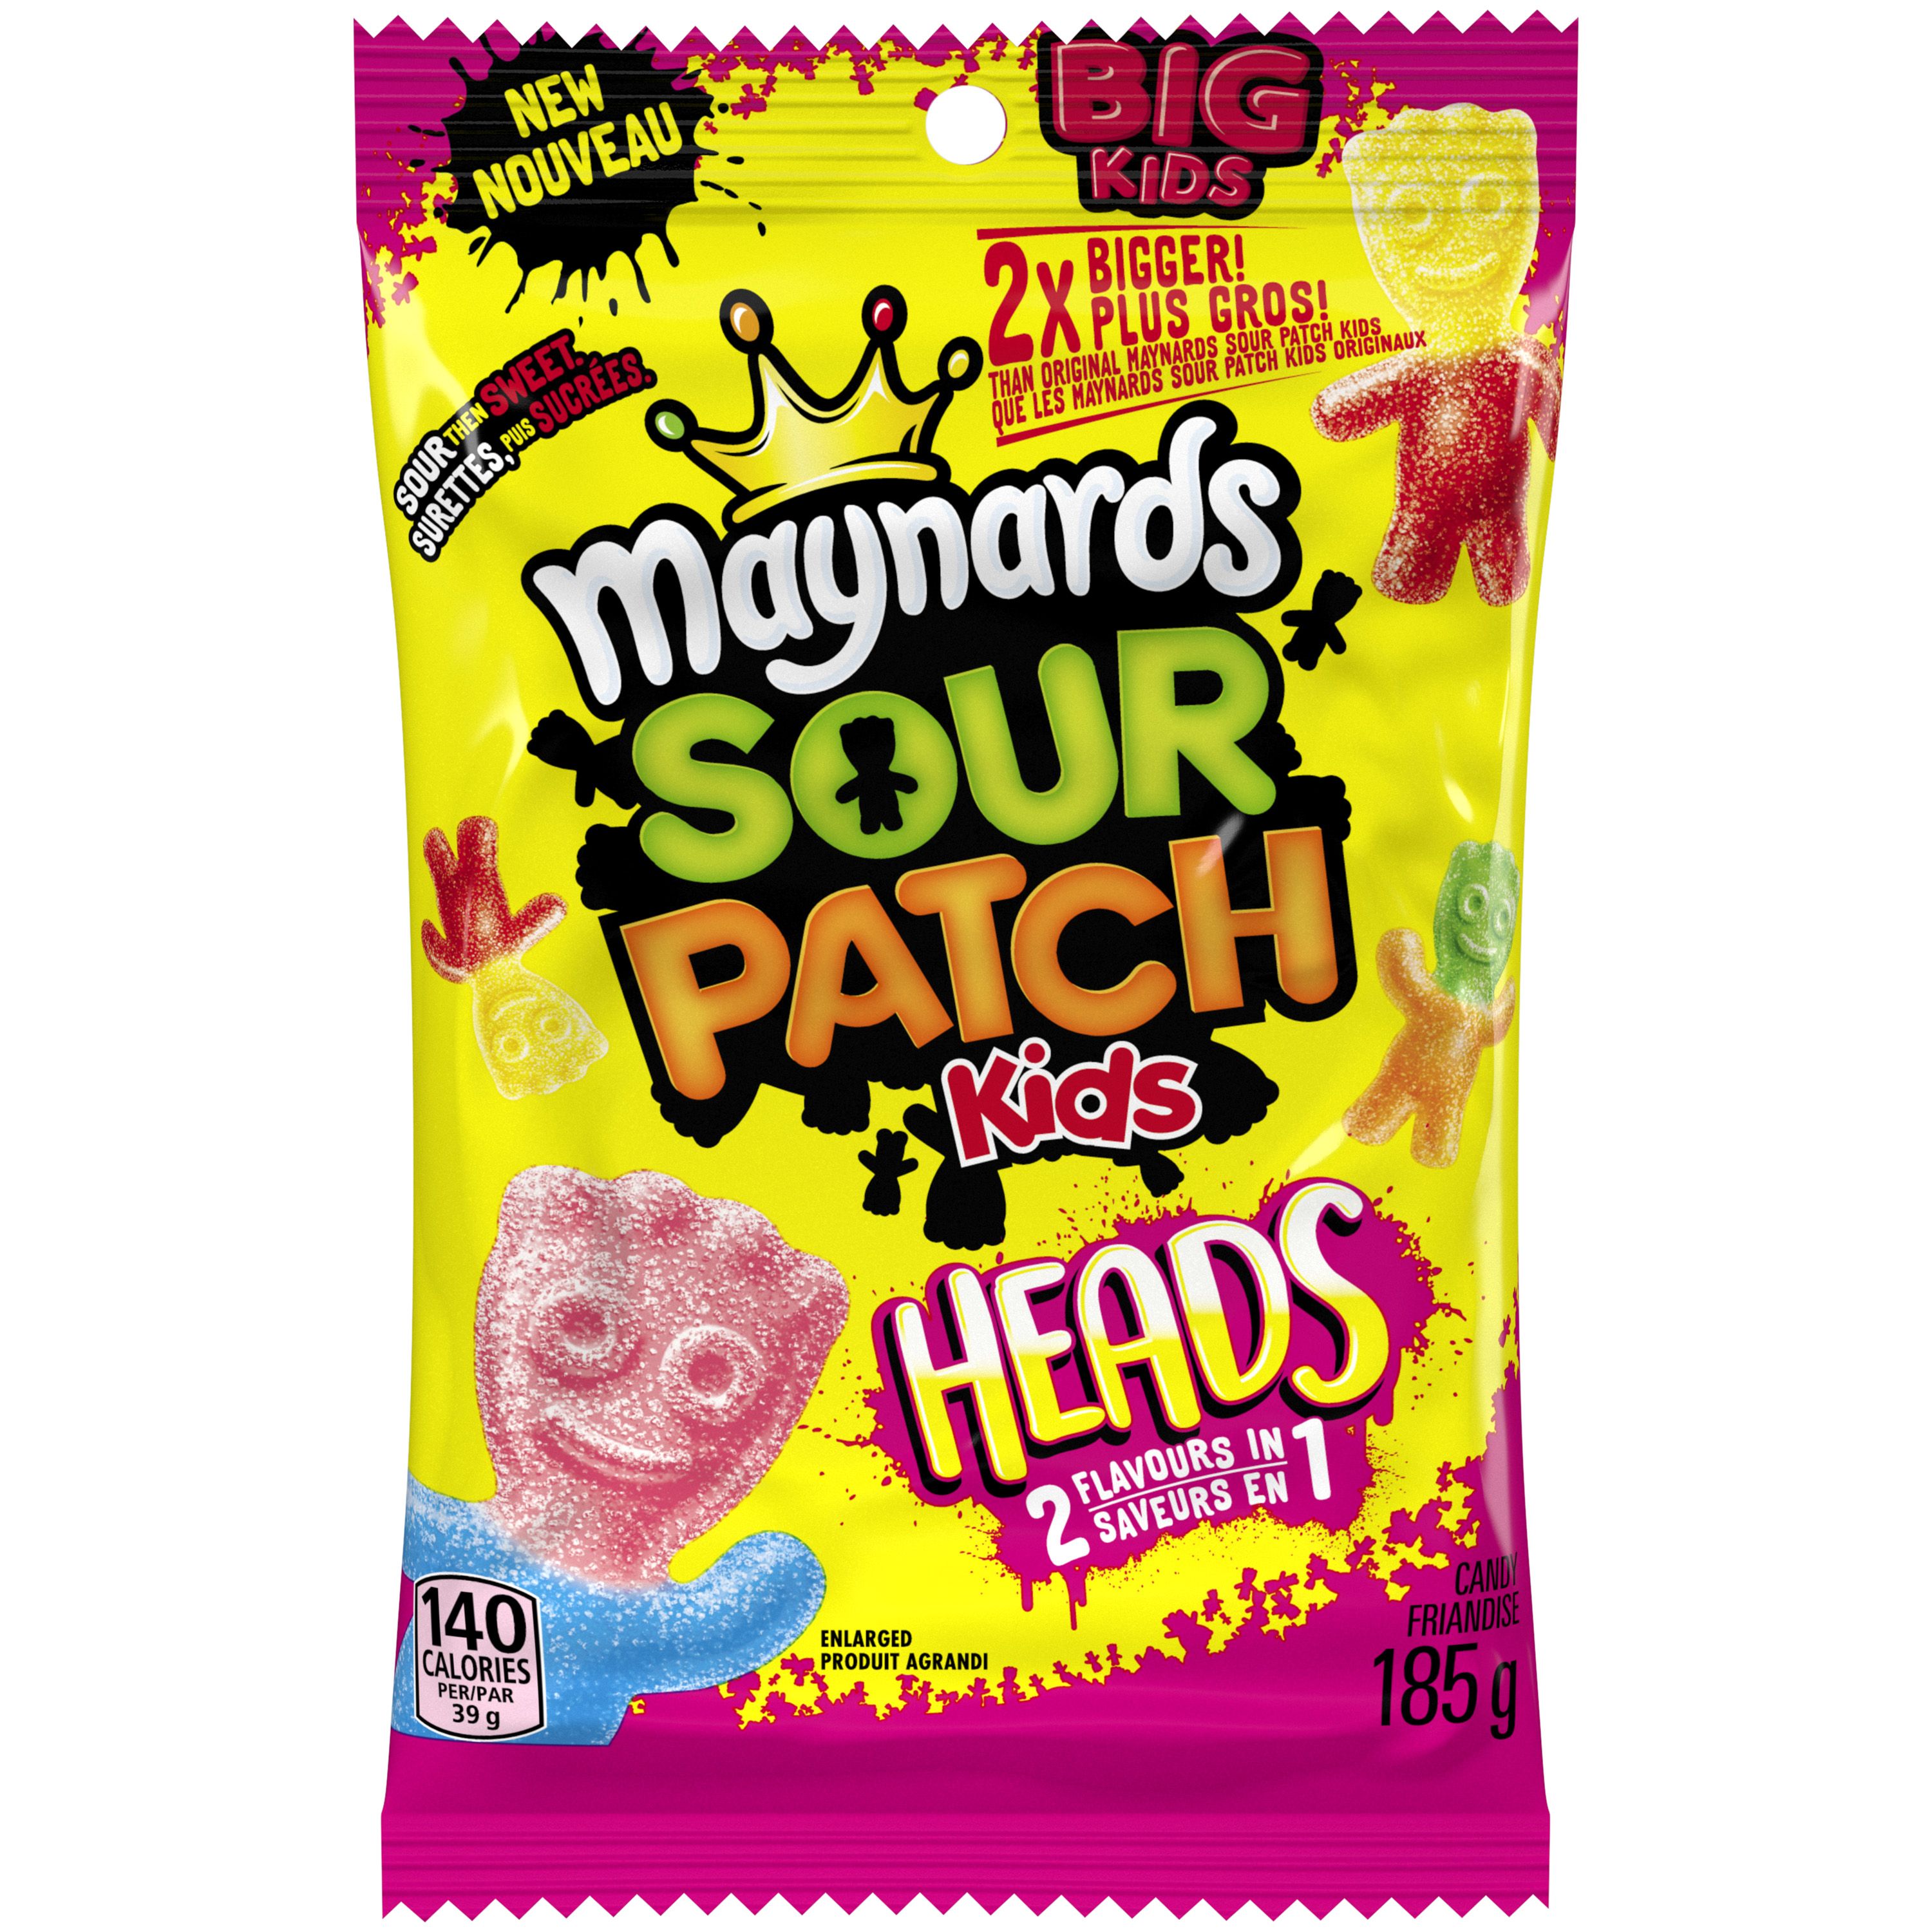 Maynards Big Sour Patch Kids Heads Candy, 185G